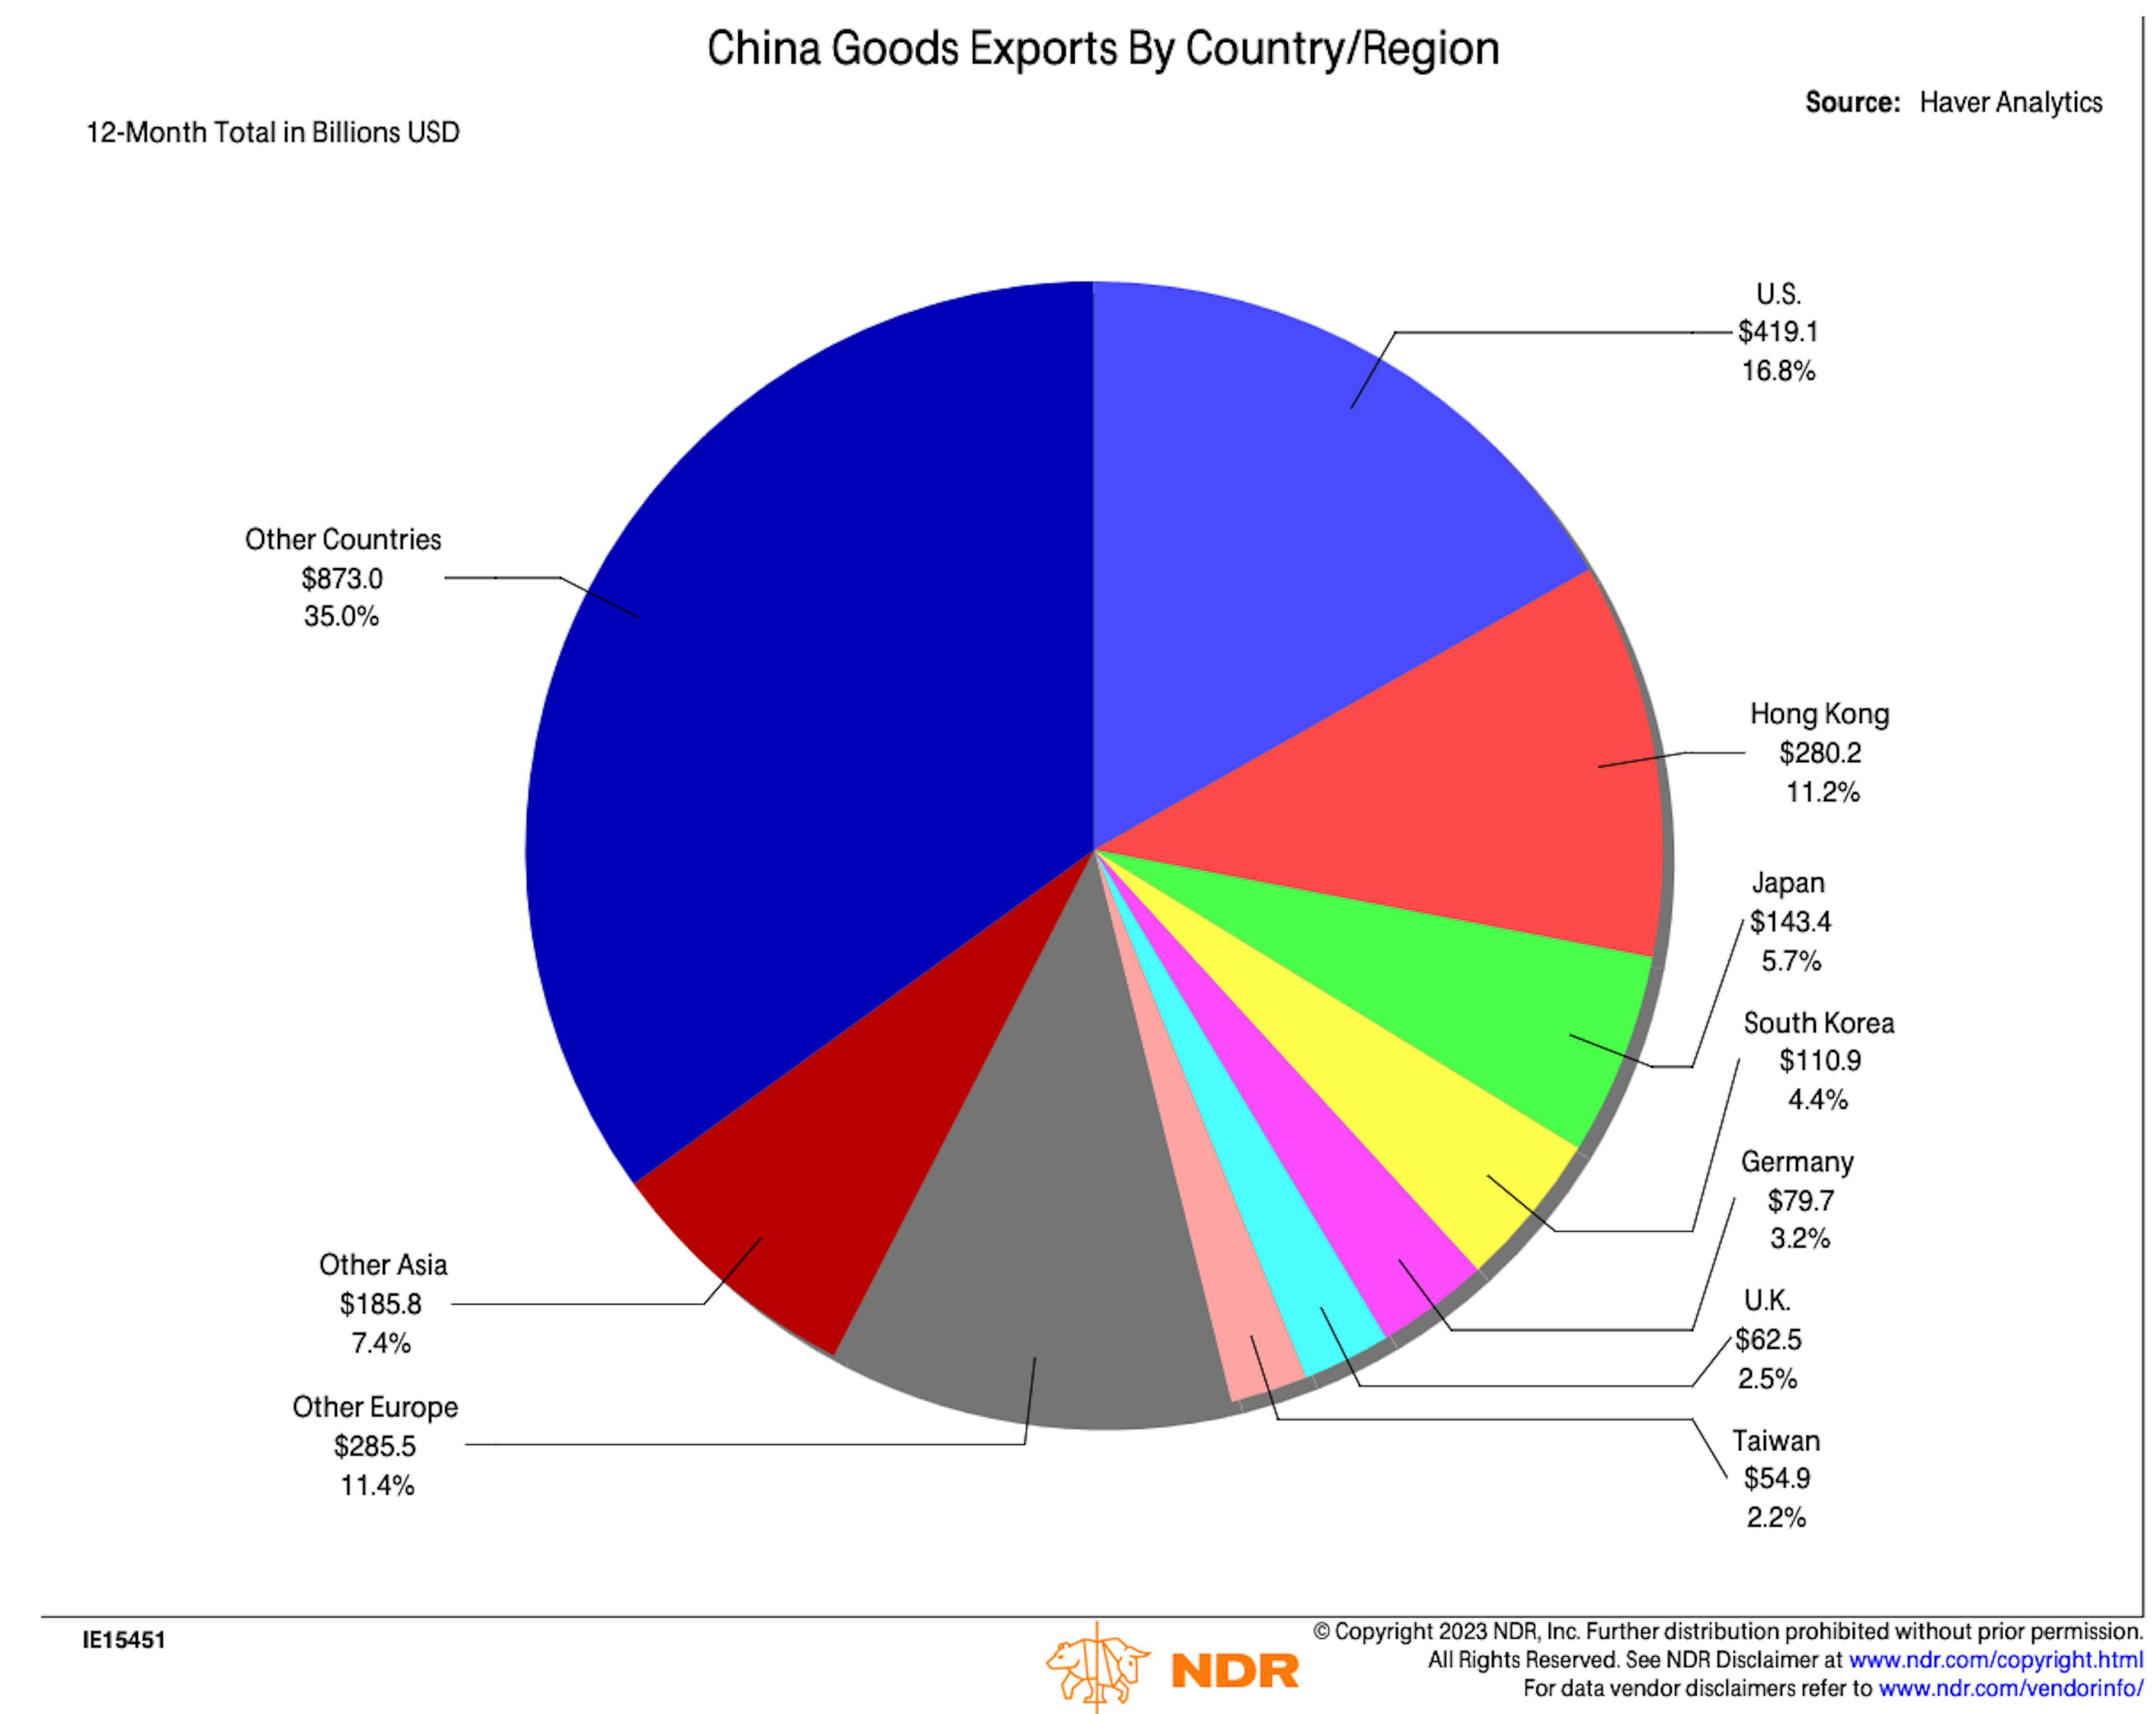 Châu Mỹ + Châu Âu kết hợp là điểm đến lớn nhất cho hàng xuất khẩu của Trung Quốc.